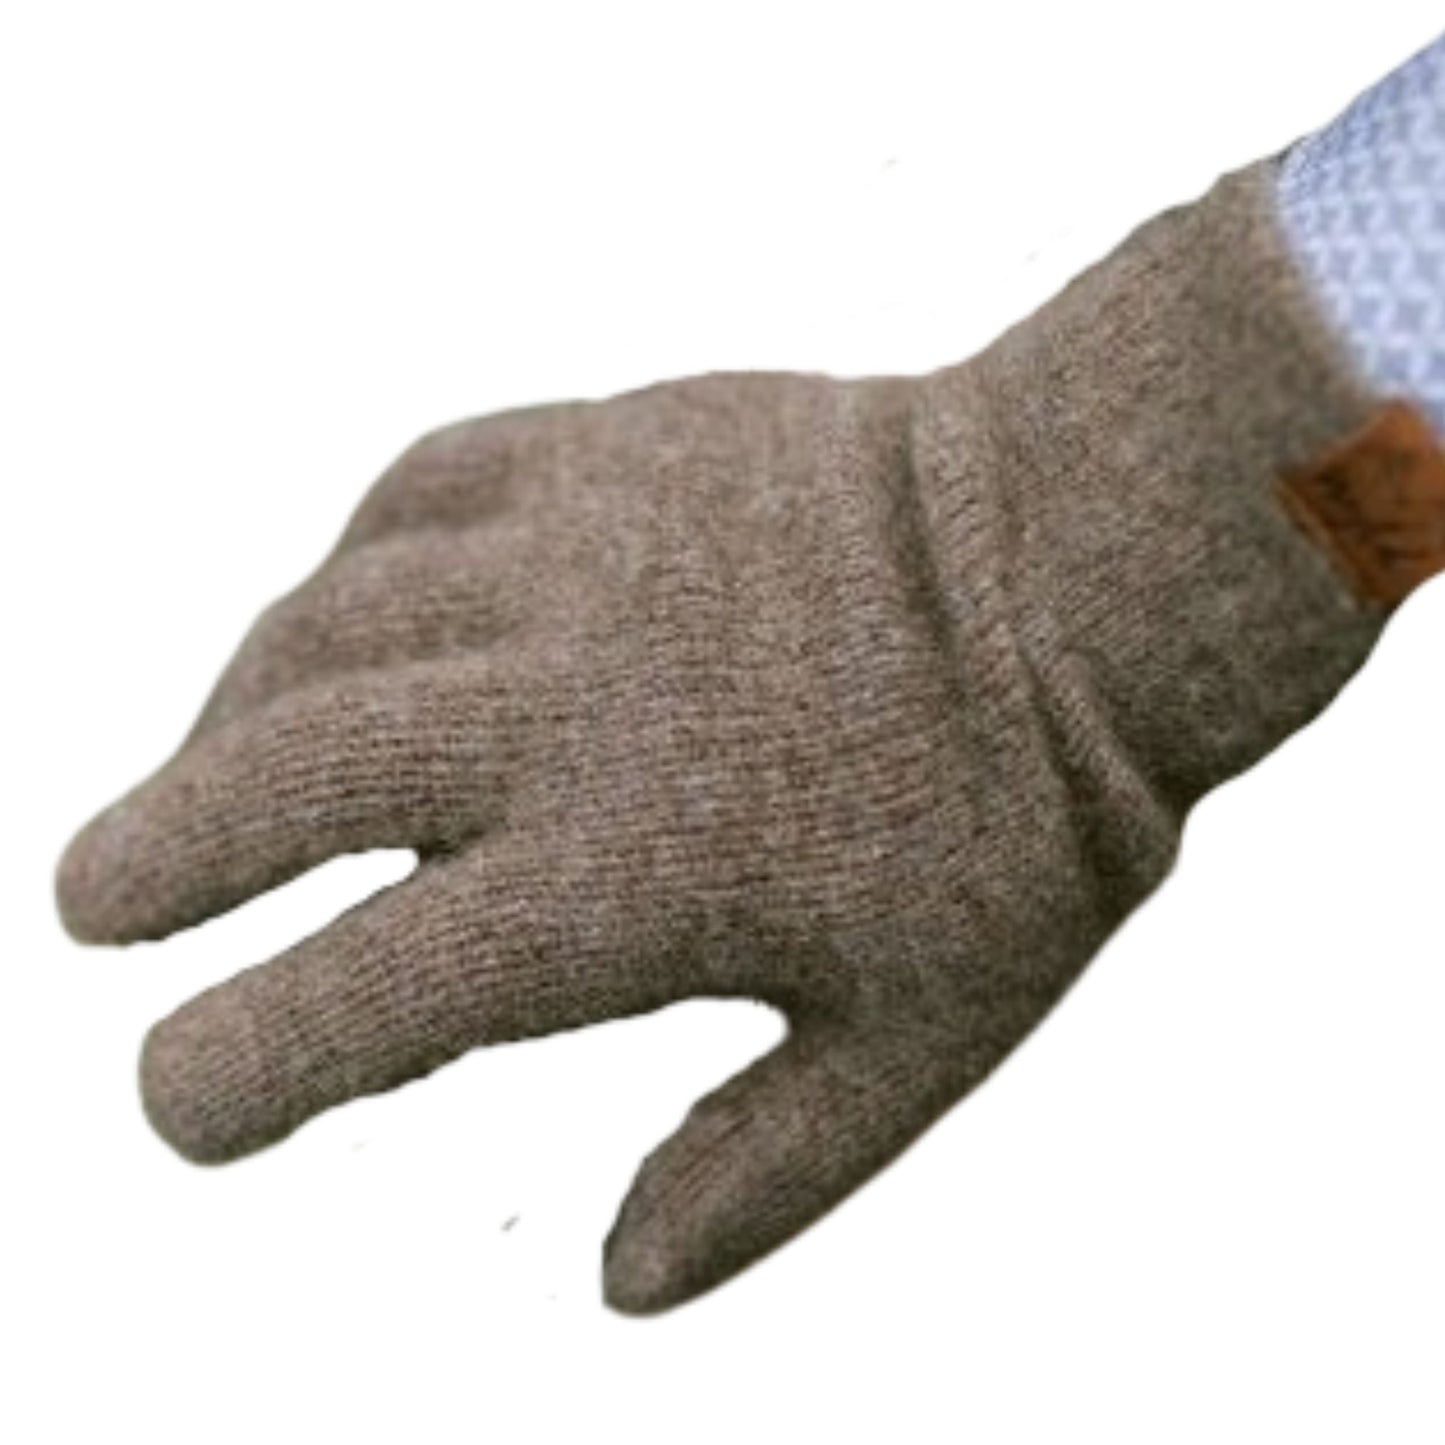 Brown wool gloves.